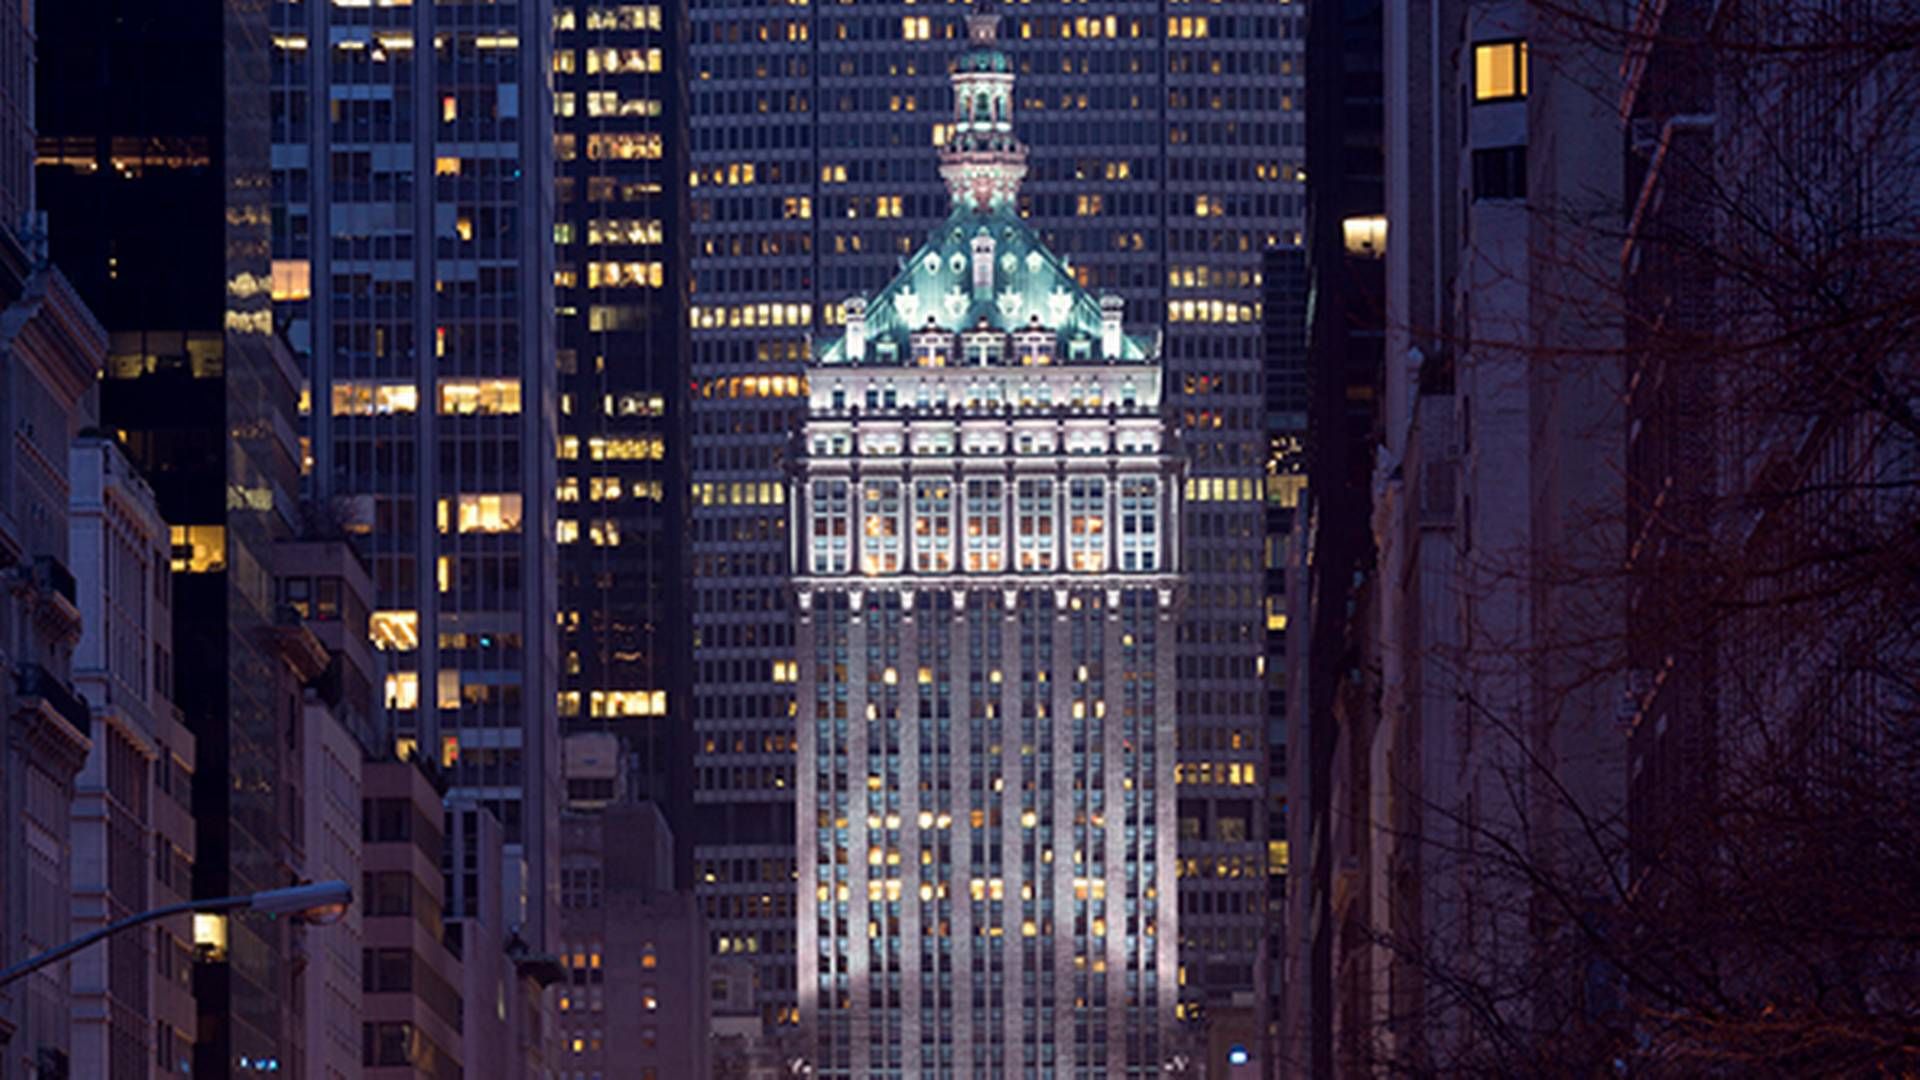 Ejendommen "Helmsley Building på Manhattans 230 Park Avenue blev i 2015 købt af RXR Realty, der er kapitalforvalter for blandt andet danske Industriens Pension, for 1,2 mia. dollars (ca. 6,3 mia. kr) ifølge Wall Street Journal. | Foto: RXR/PR